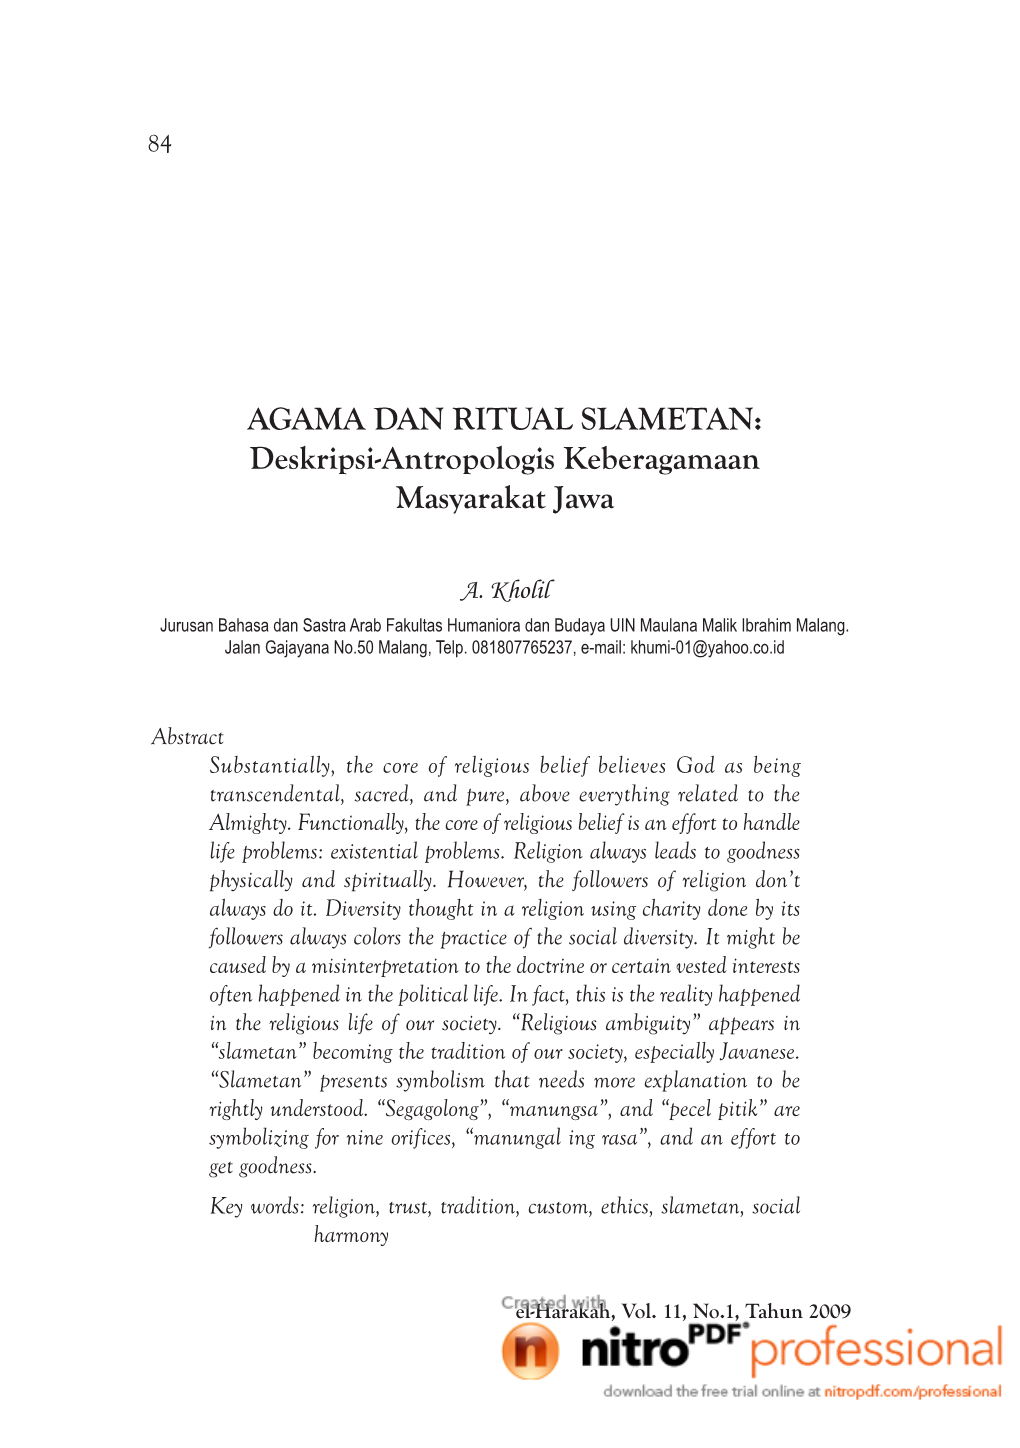 AGAMA DAN RITUAL SLAMETAN: Deskripsi-Antropologis Keberagamaan Masyarakat Jawa